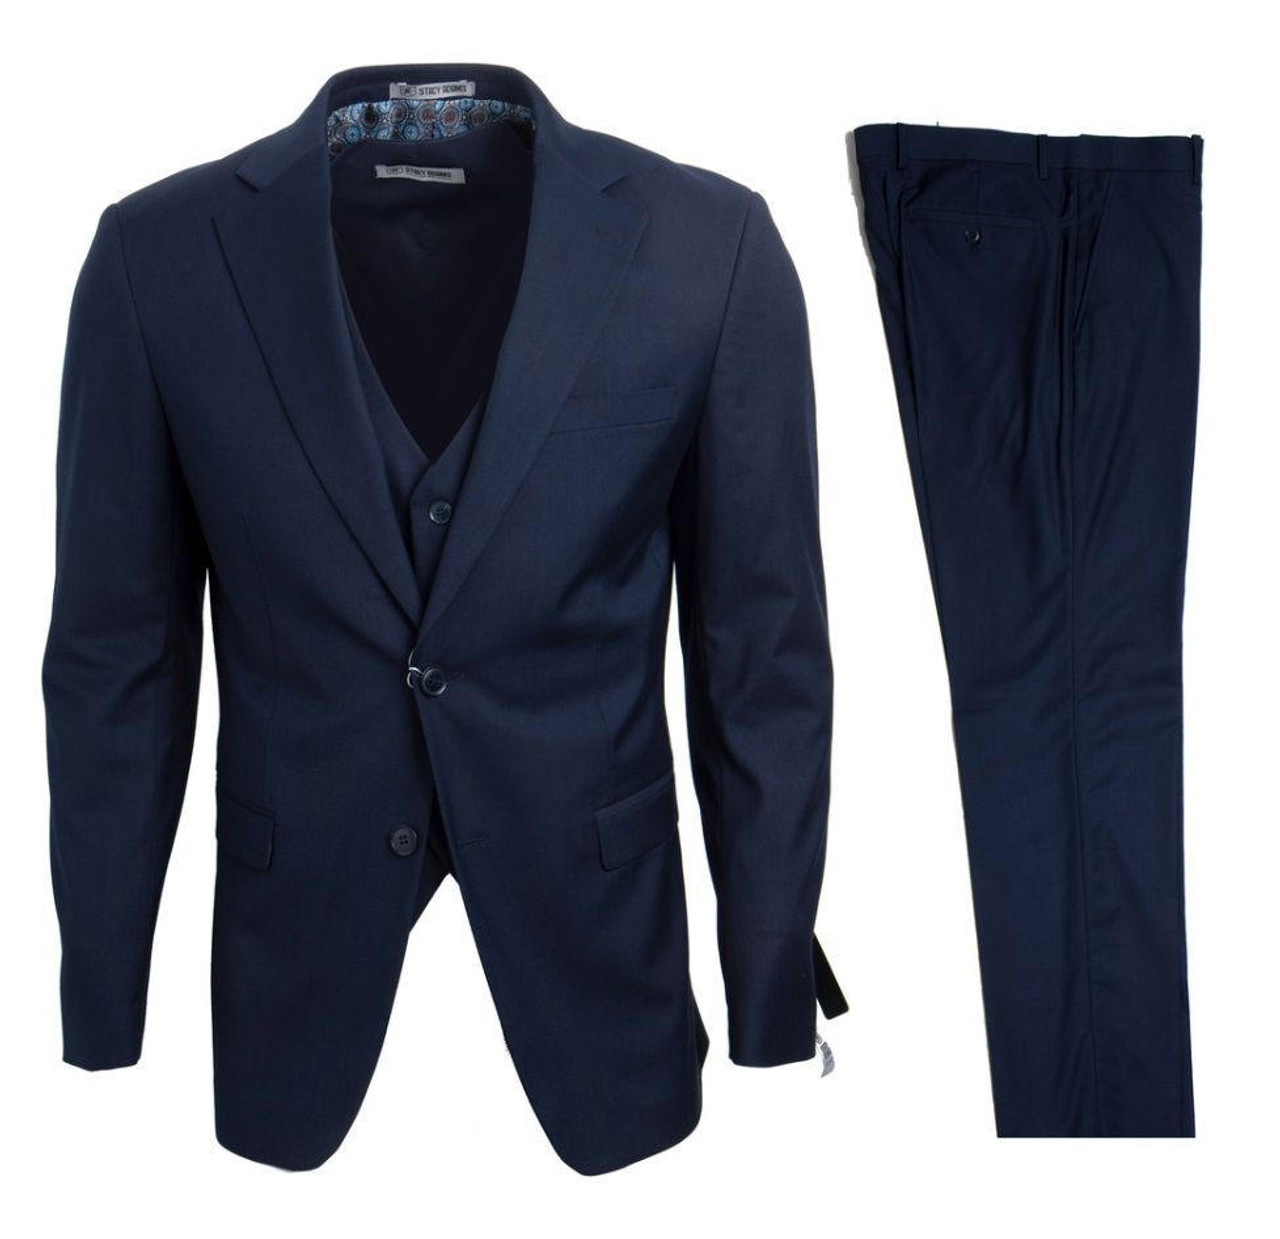 Stacy Adams Navy Blue Suit Men's Trendy 3 Piece Suits Vest SM282H-02